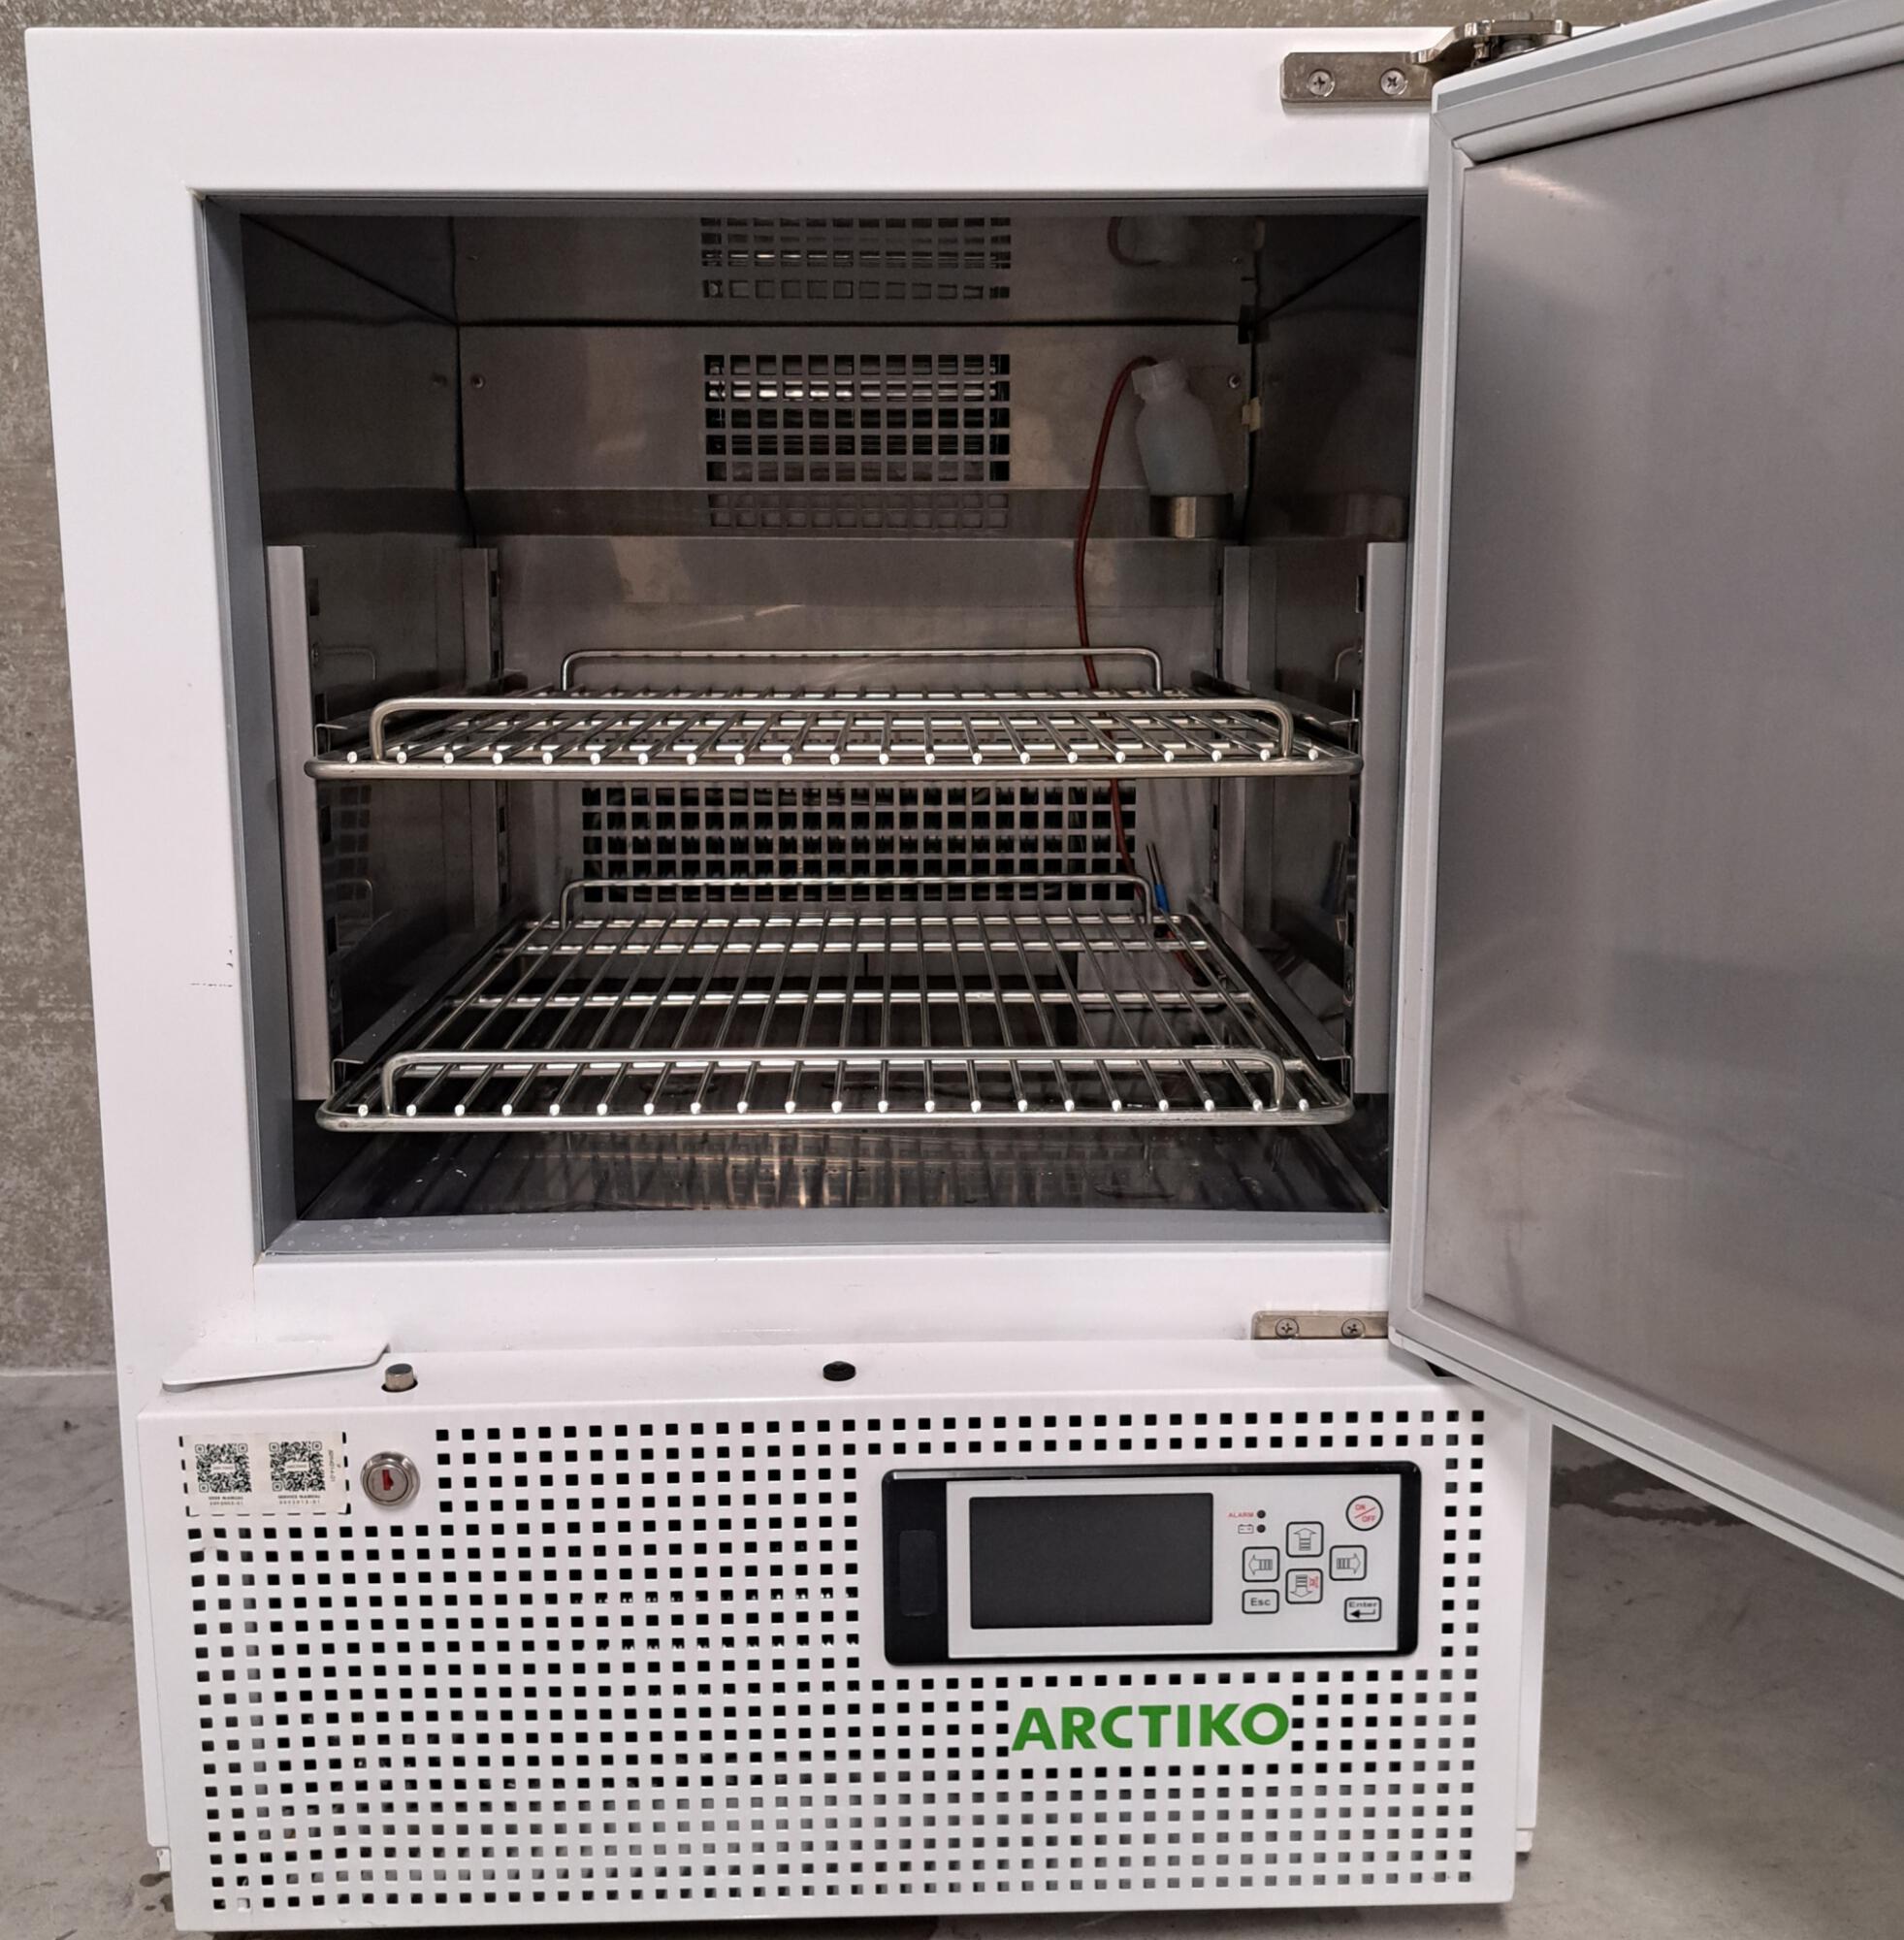 Occasion Arctiko LF 100 tafelmodel laboratorium vrieskast